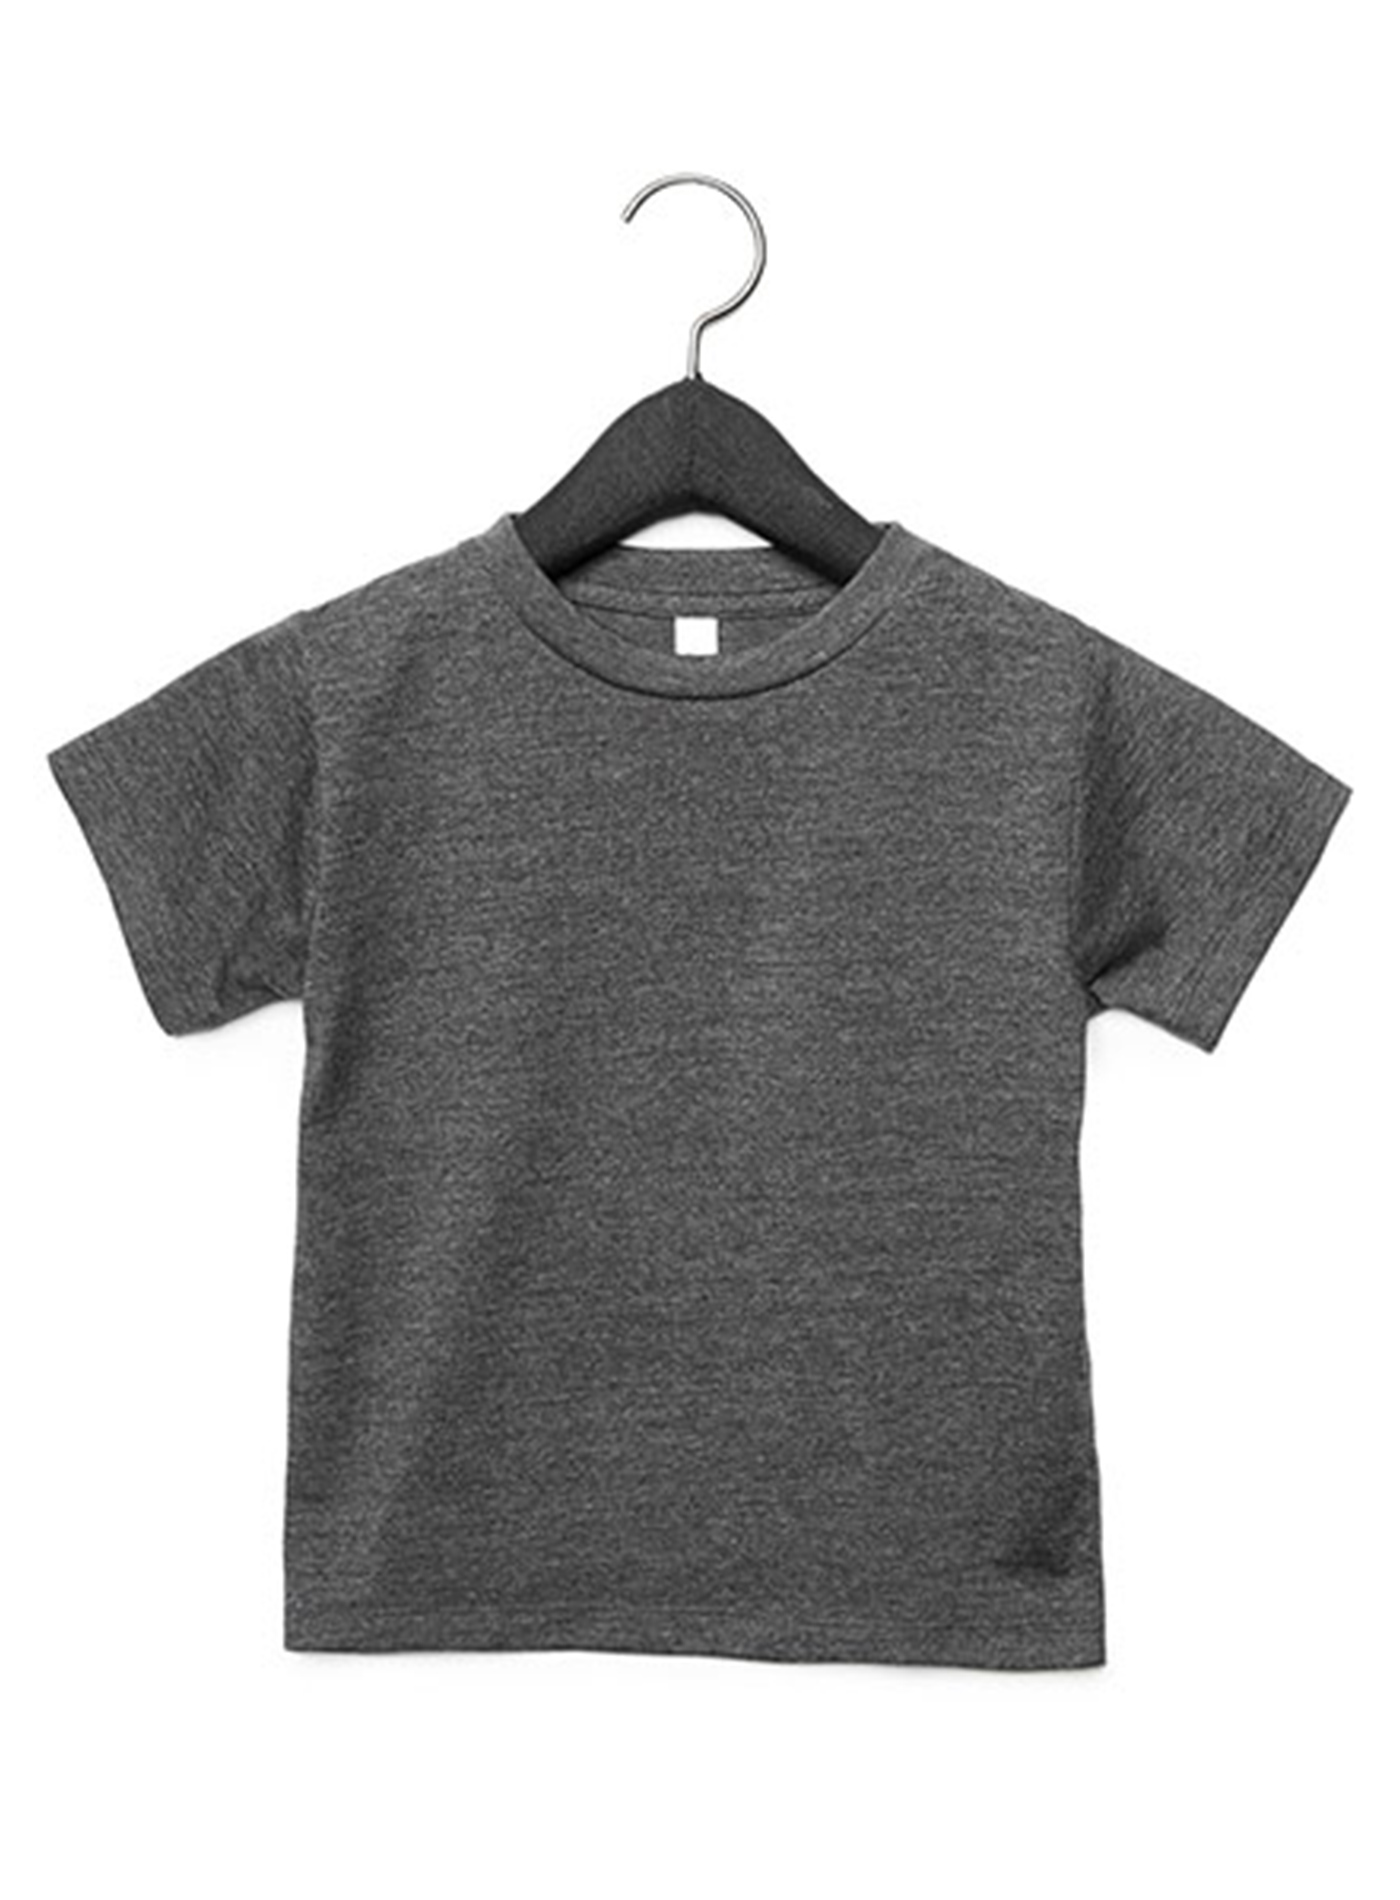 Dětské tričko Jersey - Tmavě šedohnědá 4T (104)